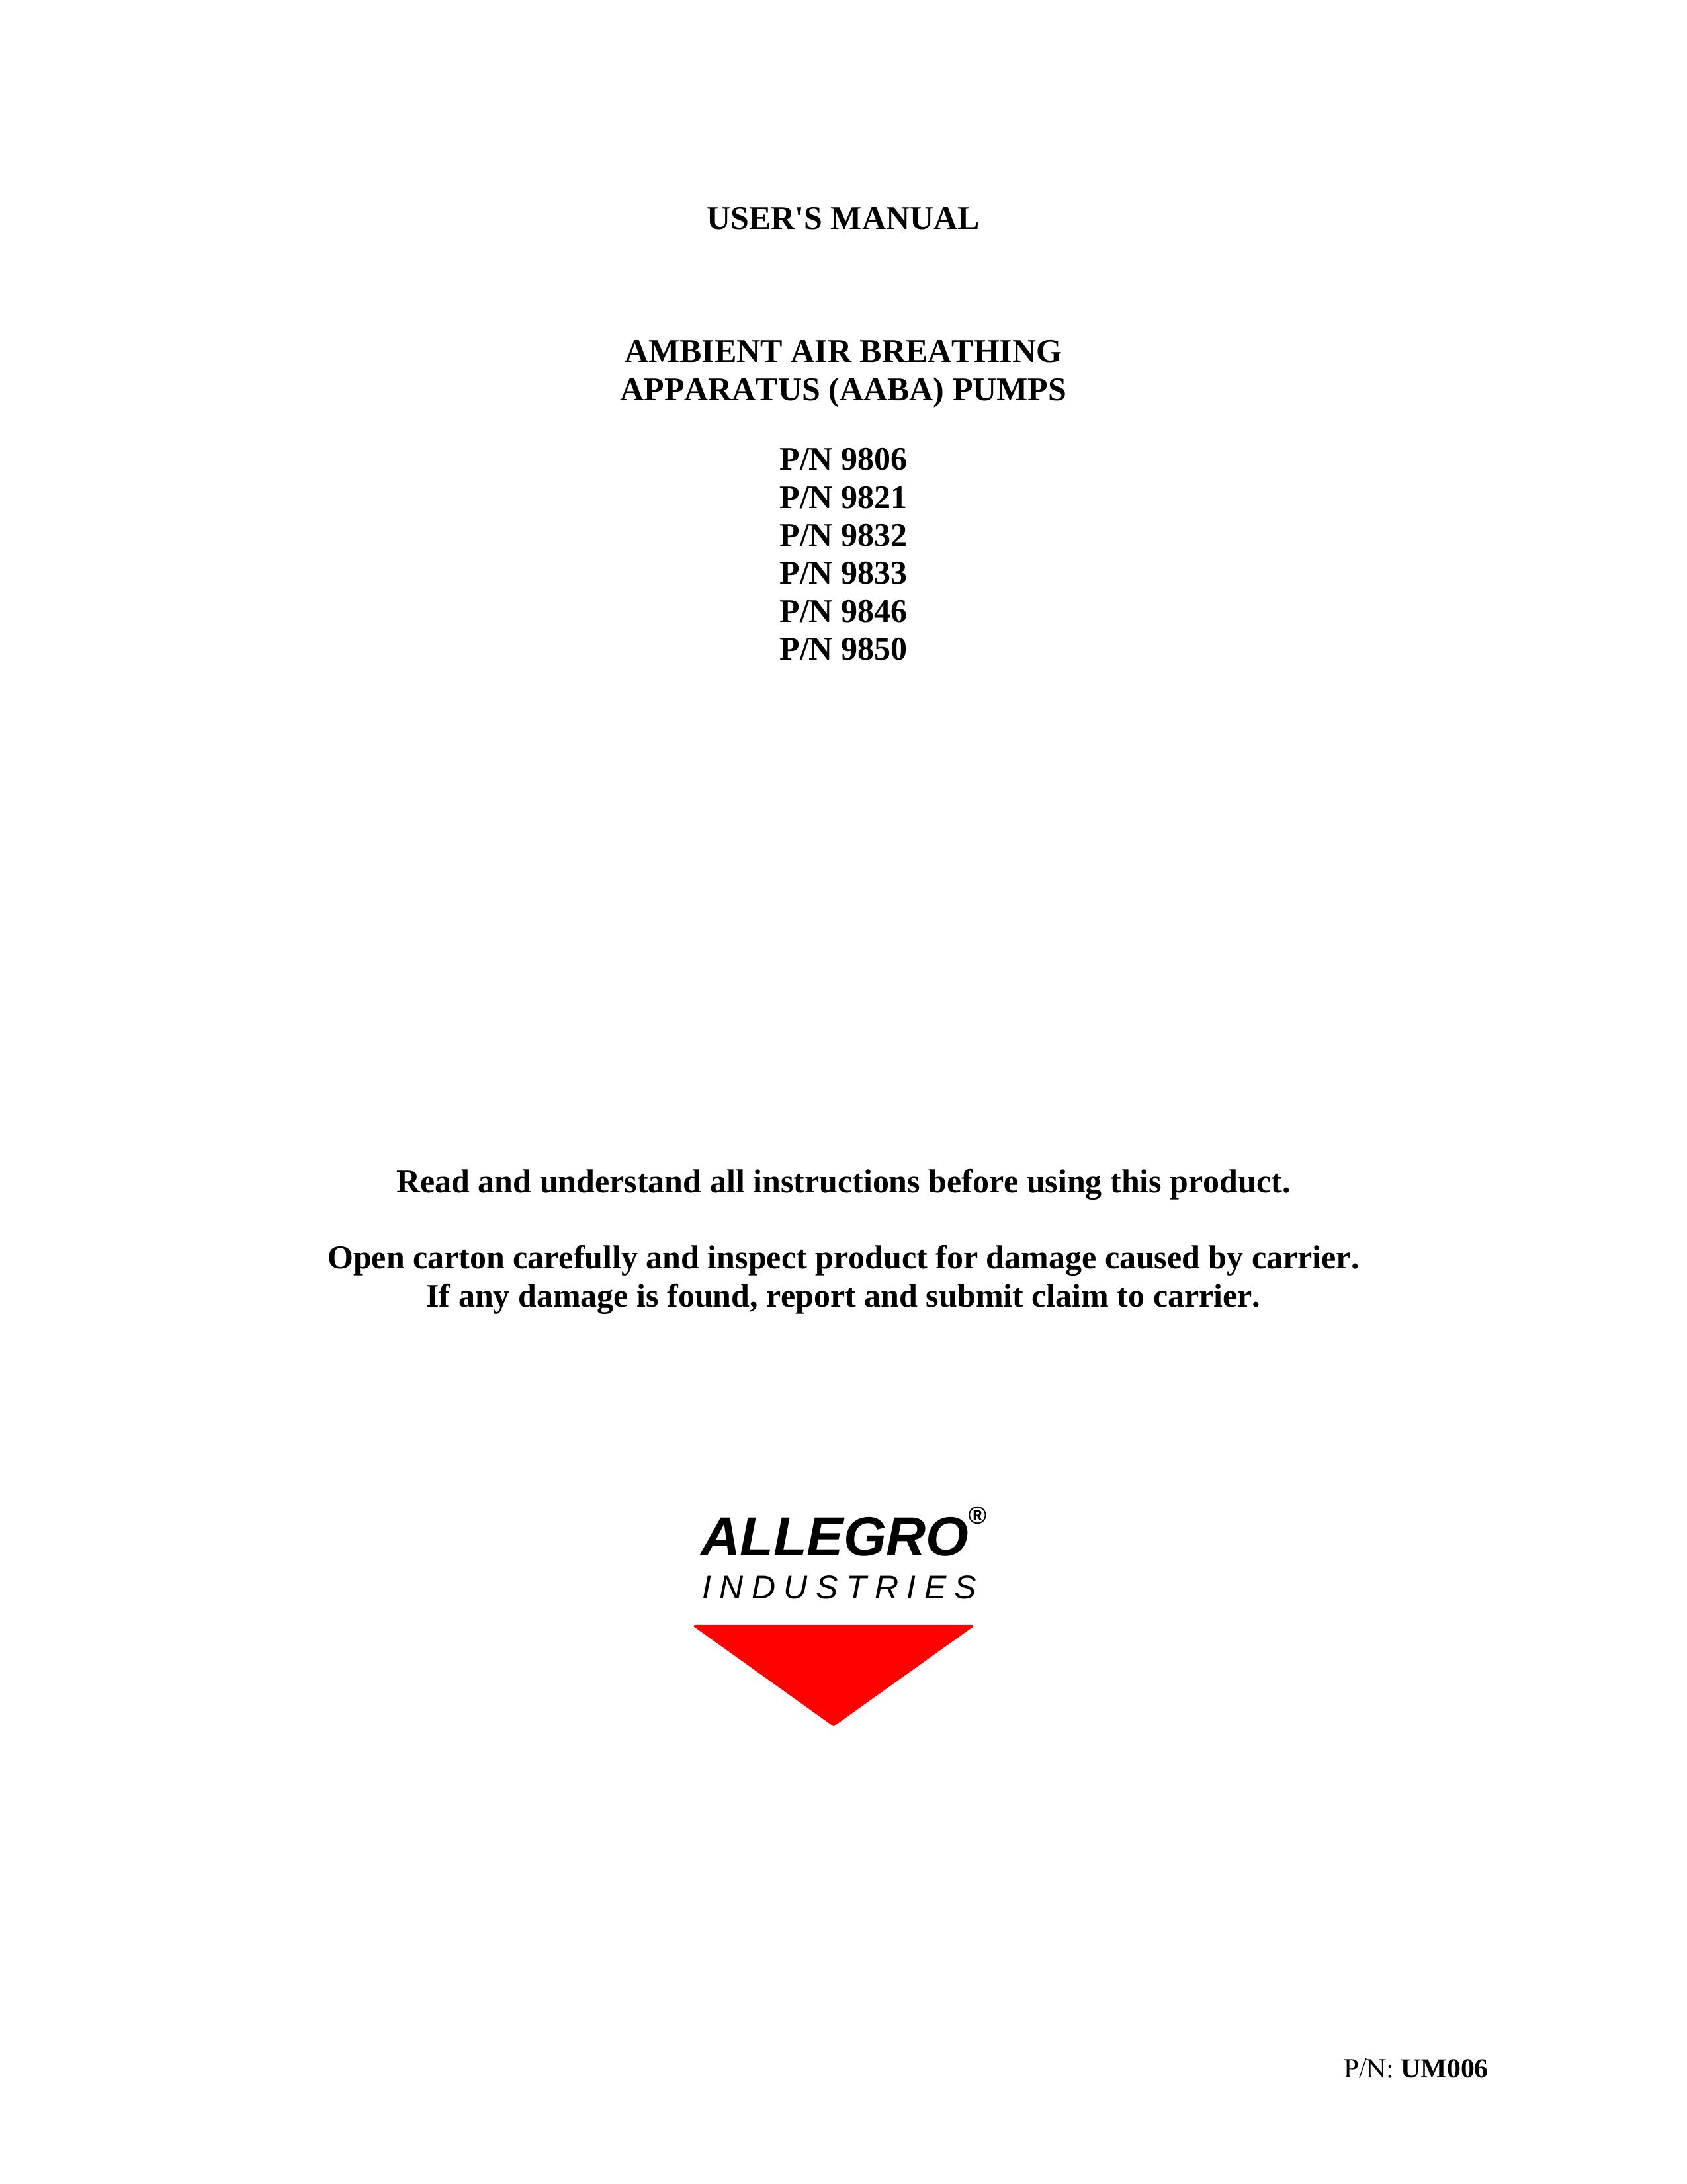 Allegro Industries 9806 Oxygen Equipment User Manual